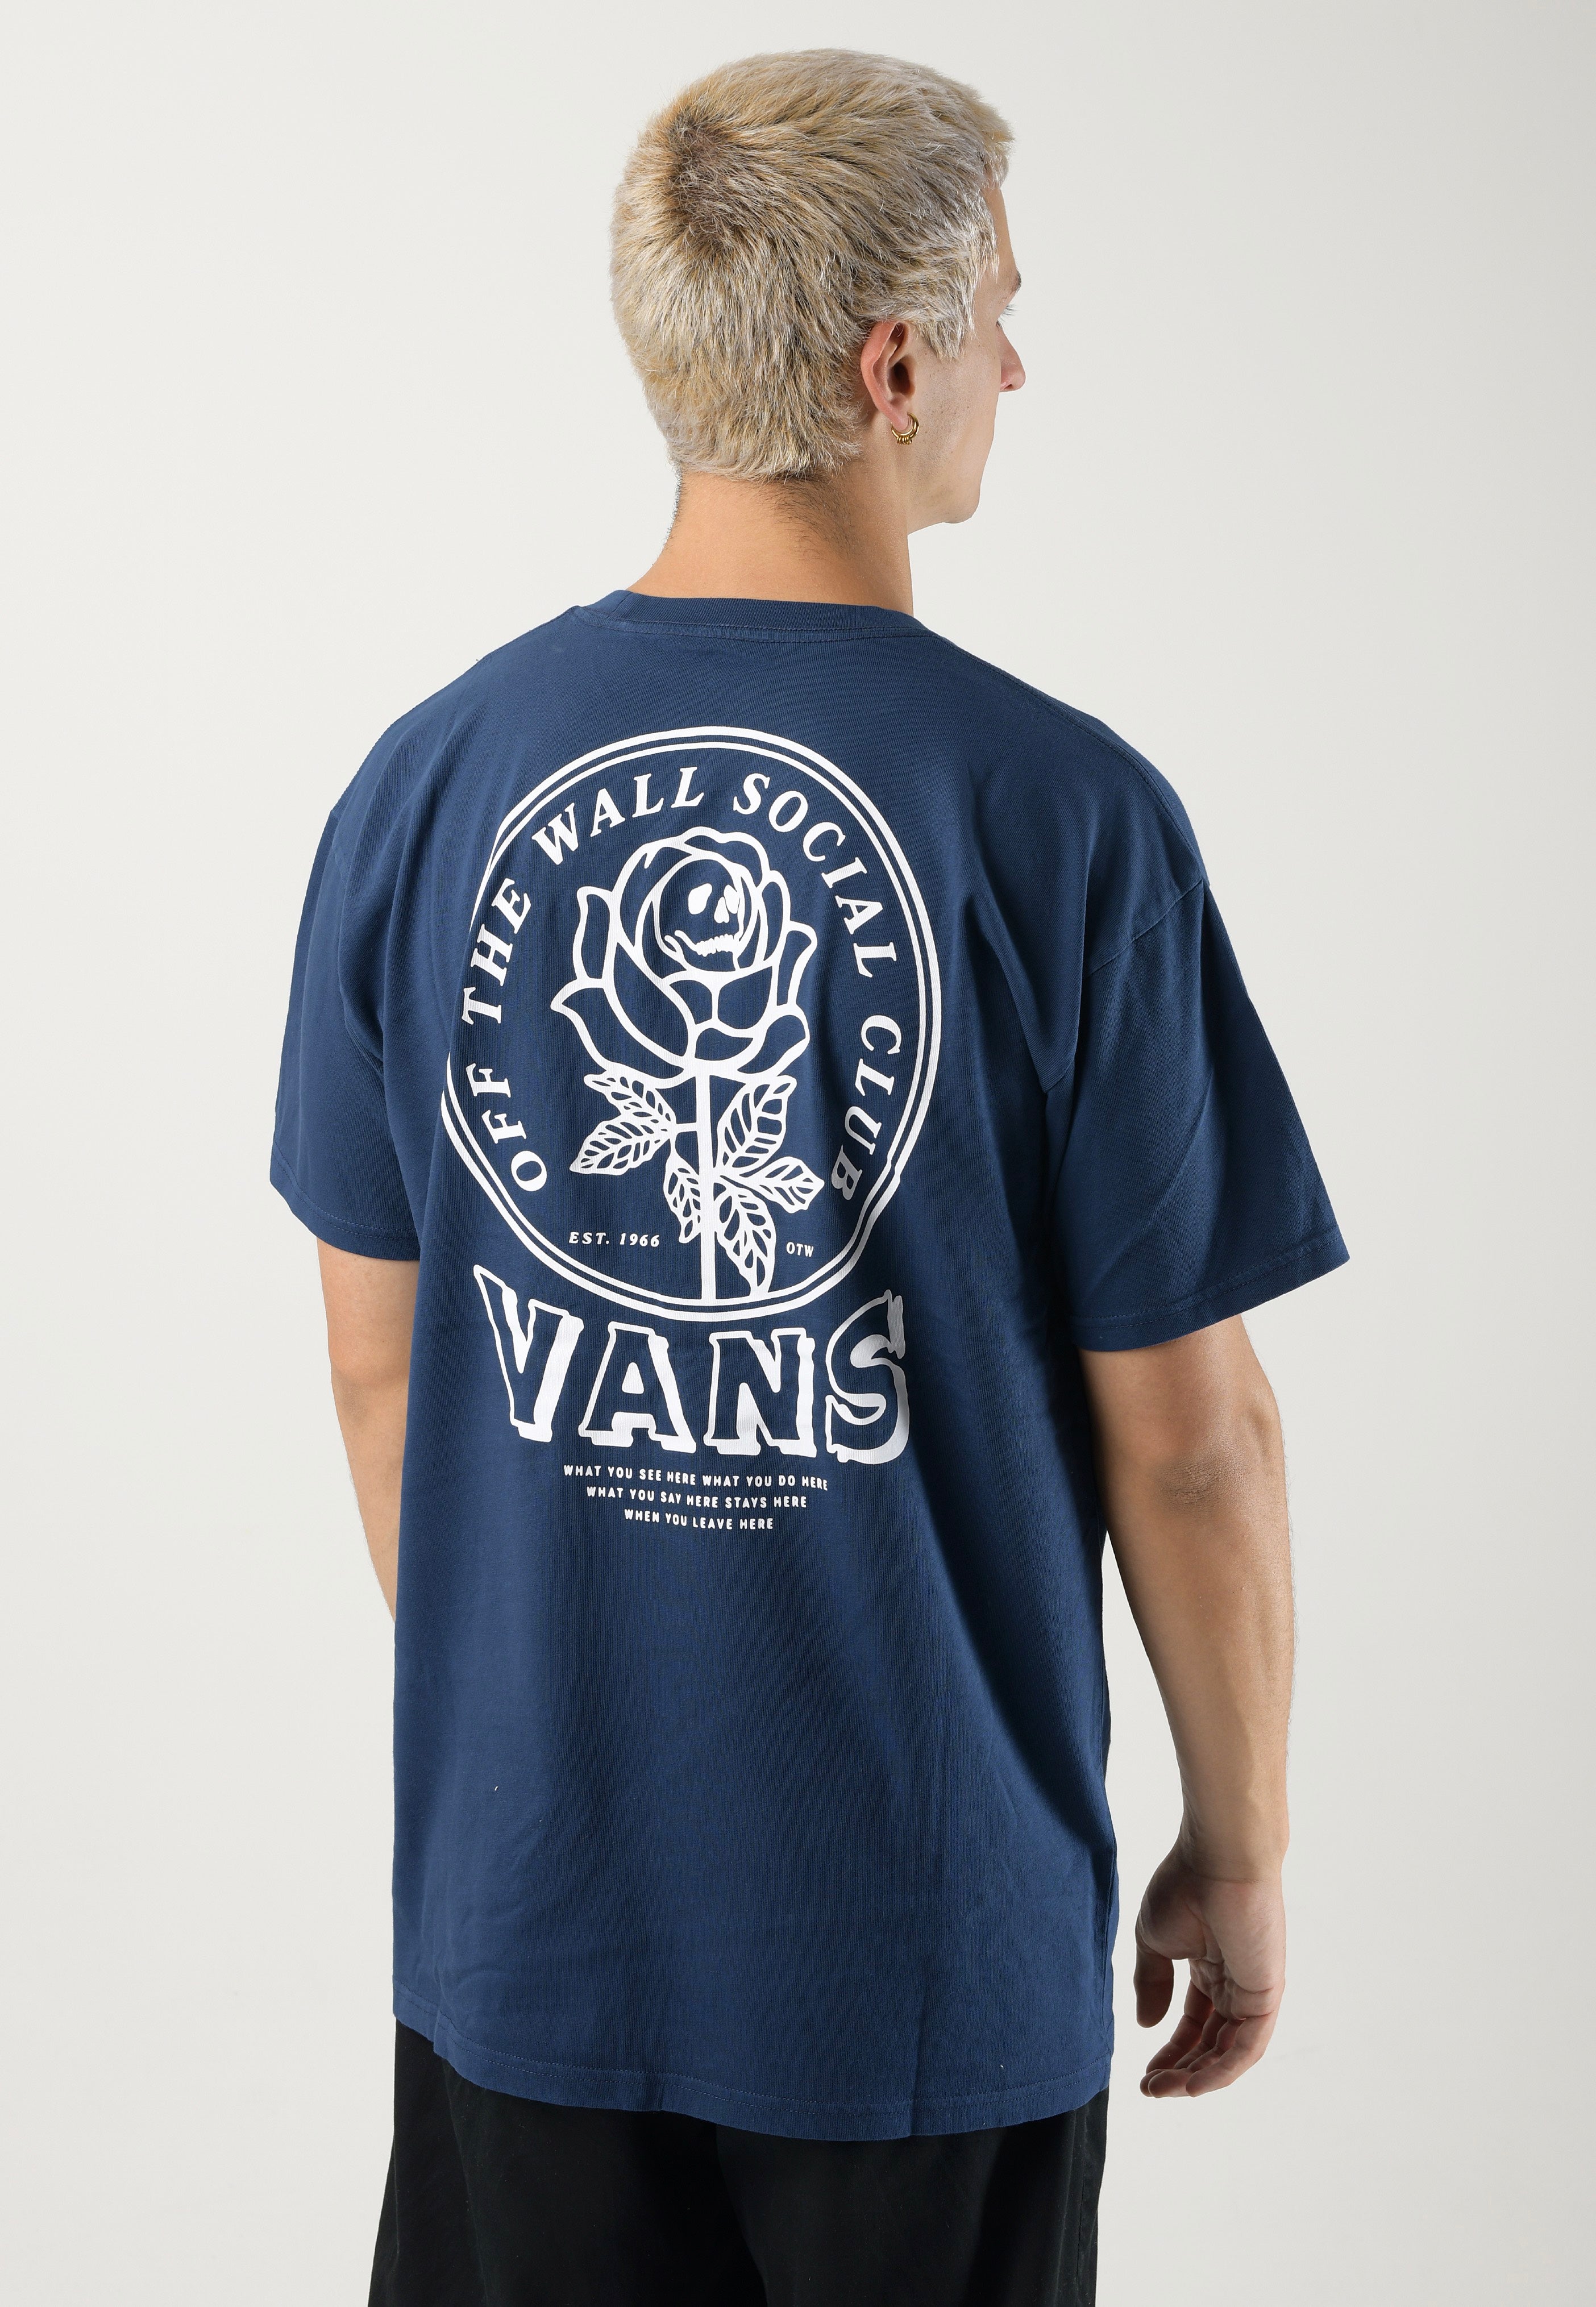 Vans - Off The Wall Social Club Dress Blues - T-Shirt | Men-Image